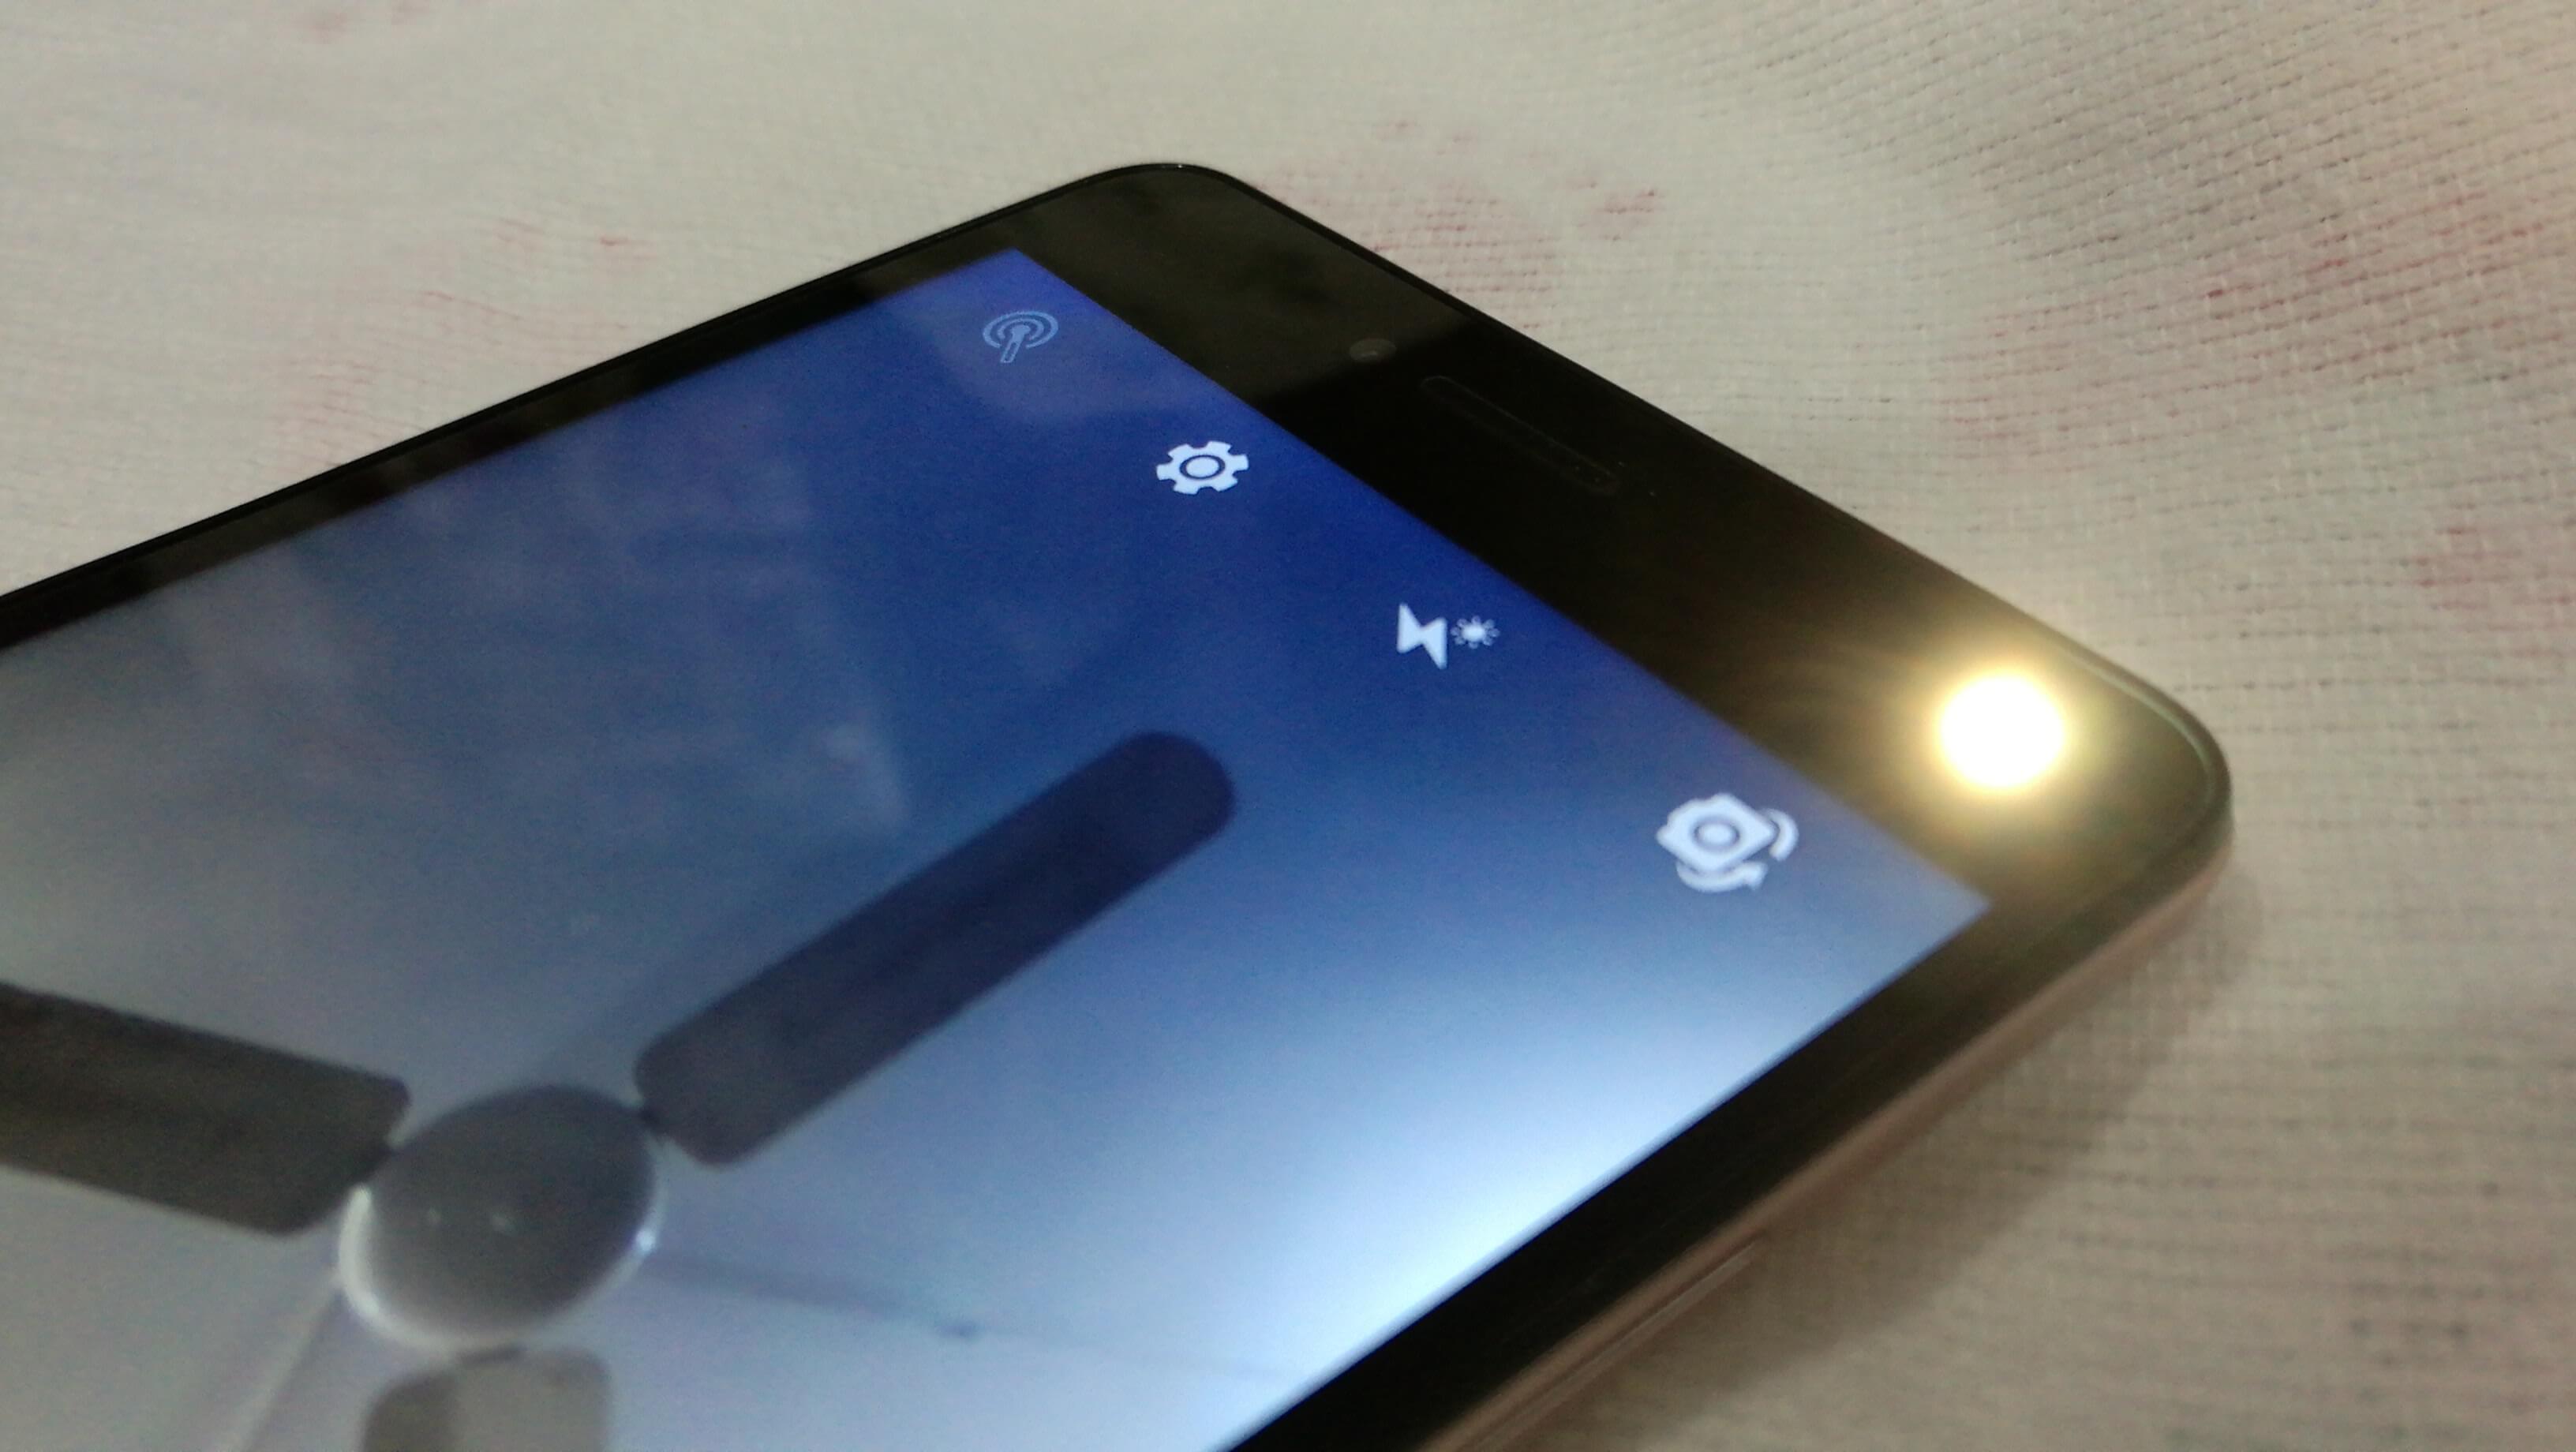 Corrigir o Flash da Câmera Android Não Funcionando